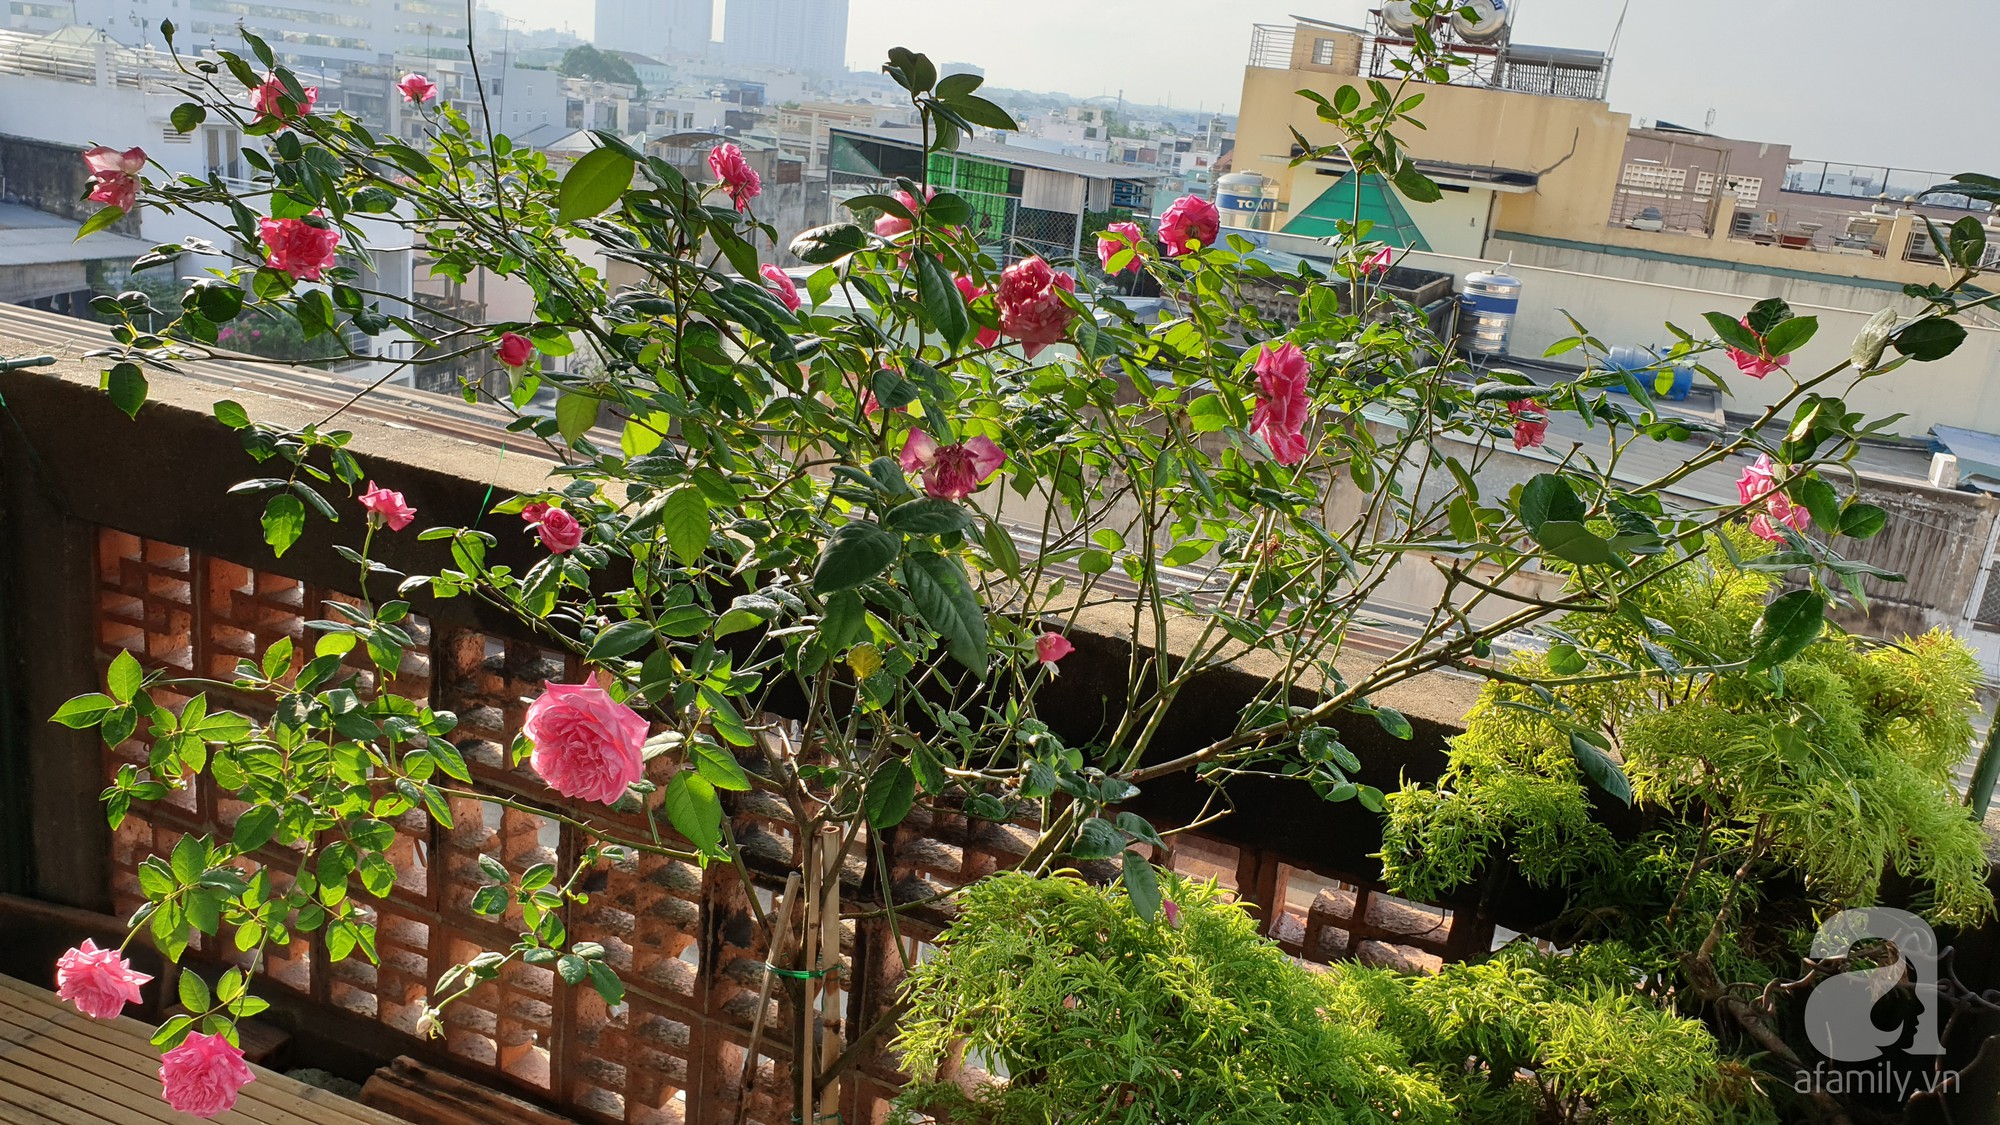 Vườn hồng trên sân thượng rực rỡ sắc màu của chàng trai 8x siêu đảm ở Sài Gòn - Ảnh 4.